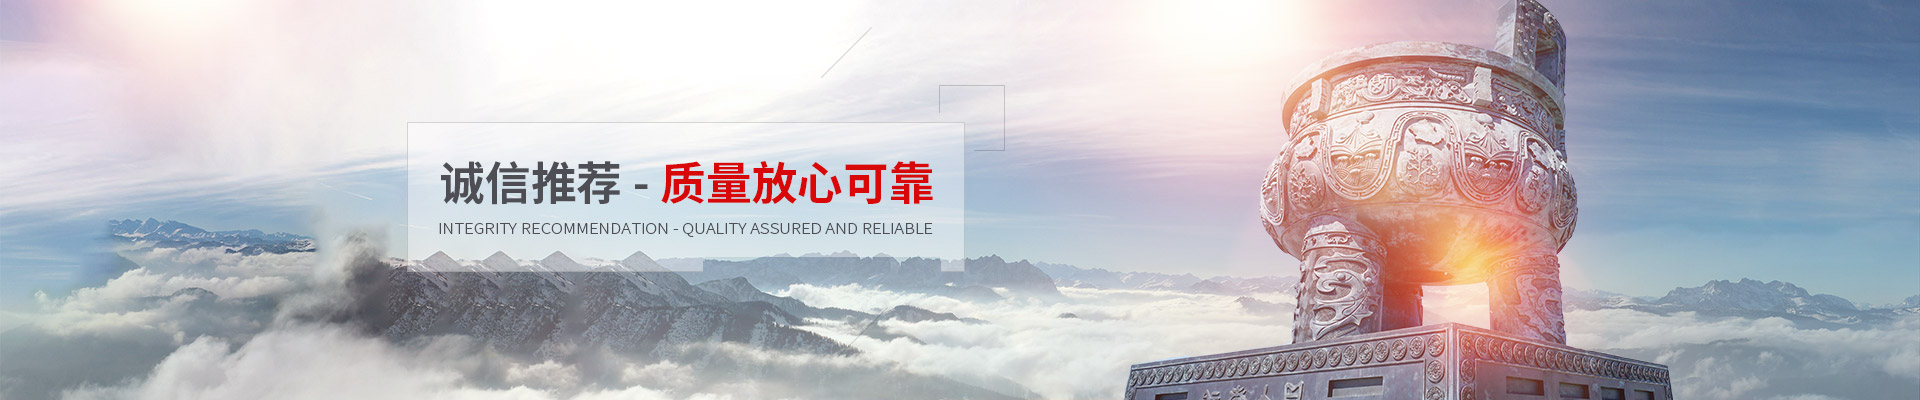 上海托展智能科技股份有限公司公司介绍